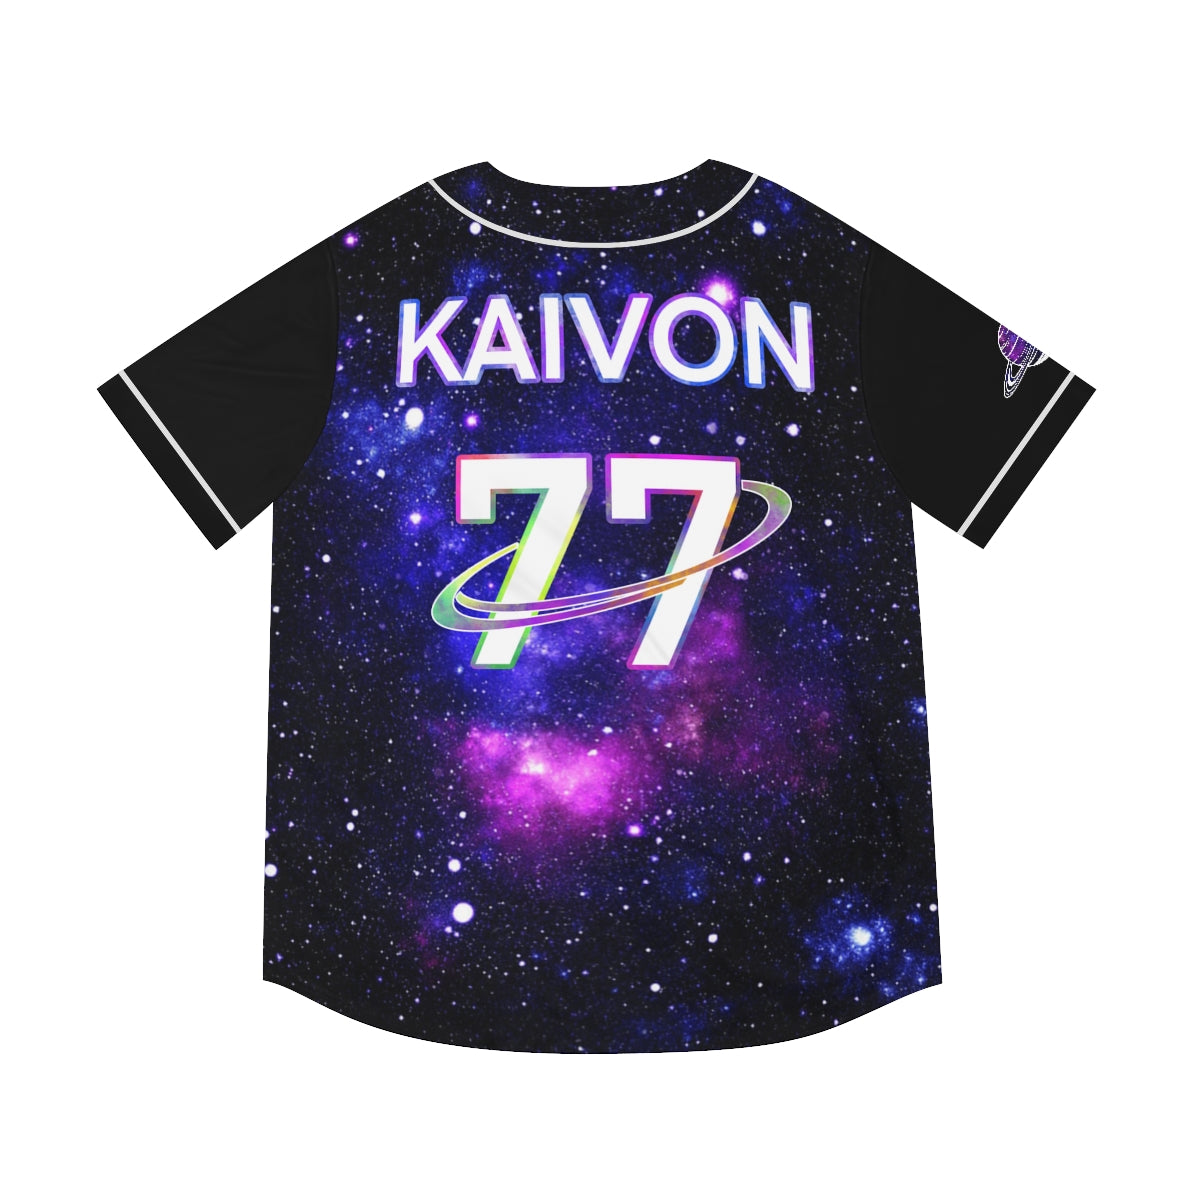 Kaivon Jersey (Galaxy)